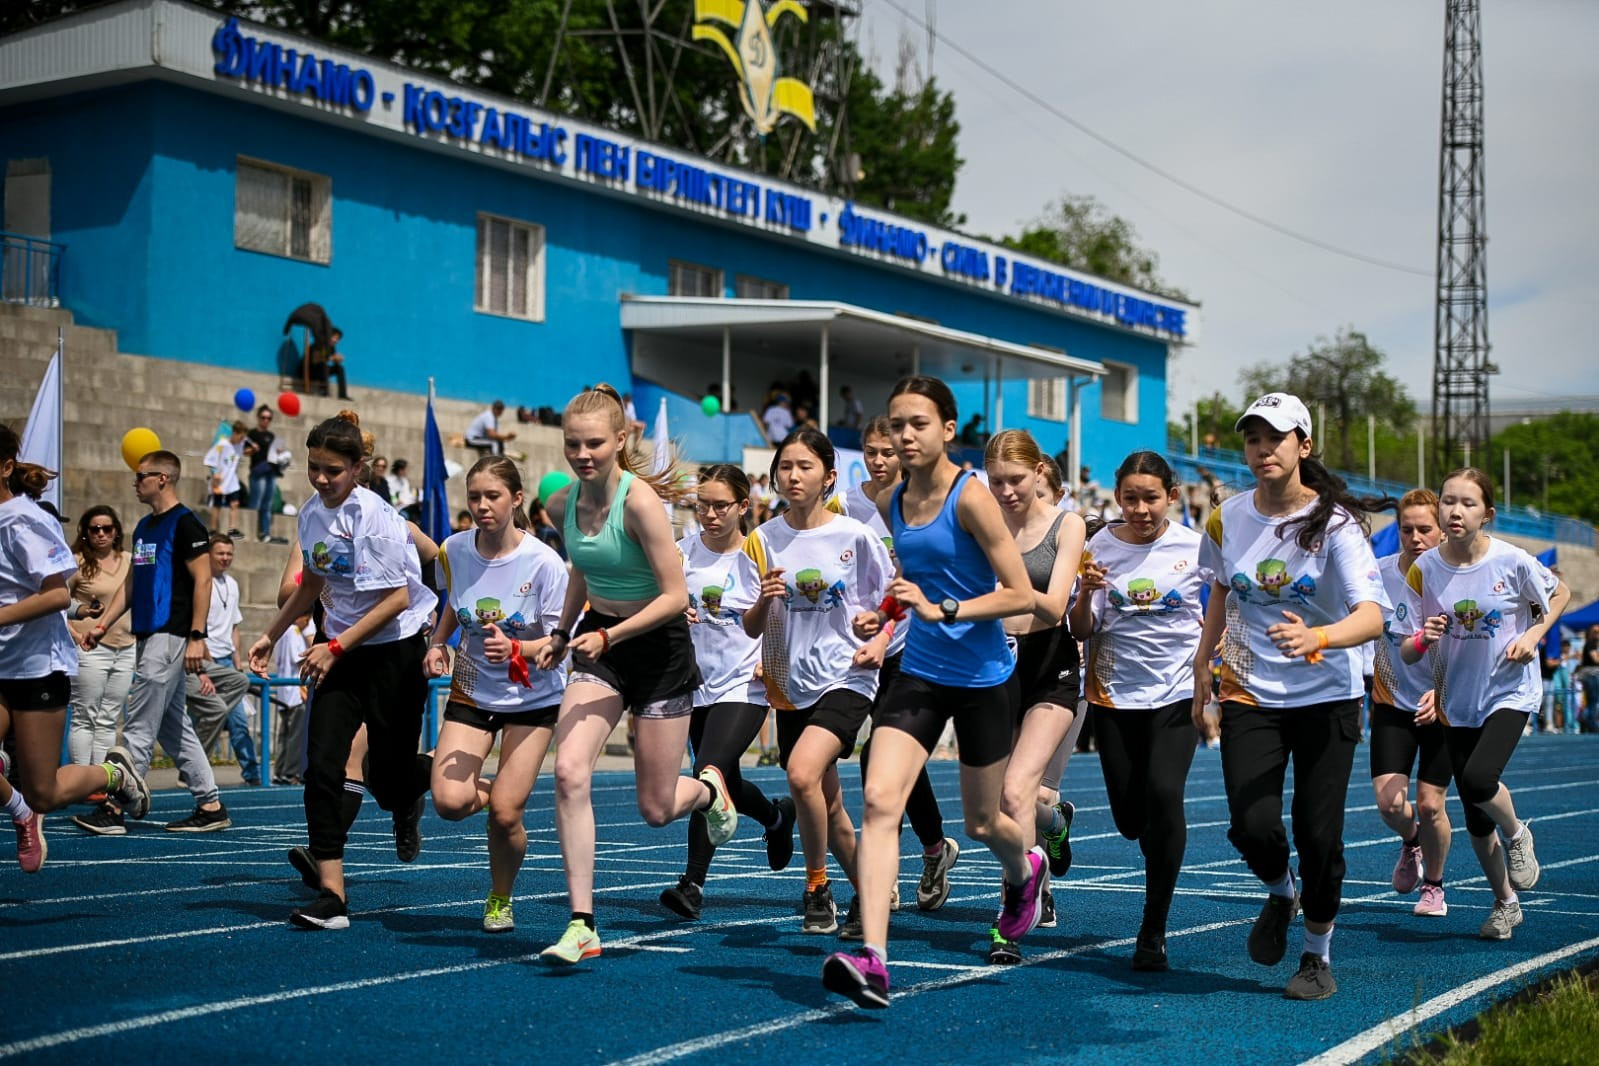 Вы сейчас просматриваете В Алматы состоялся забег Fun Run в рамках кампании “Азиатские игры для всех”